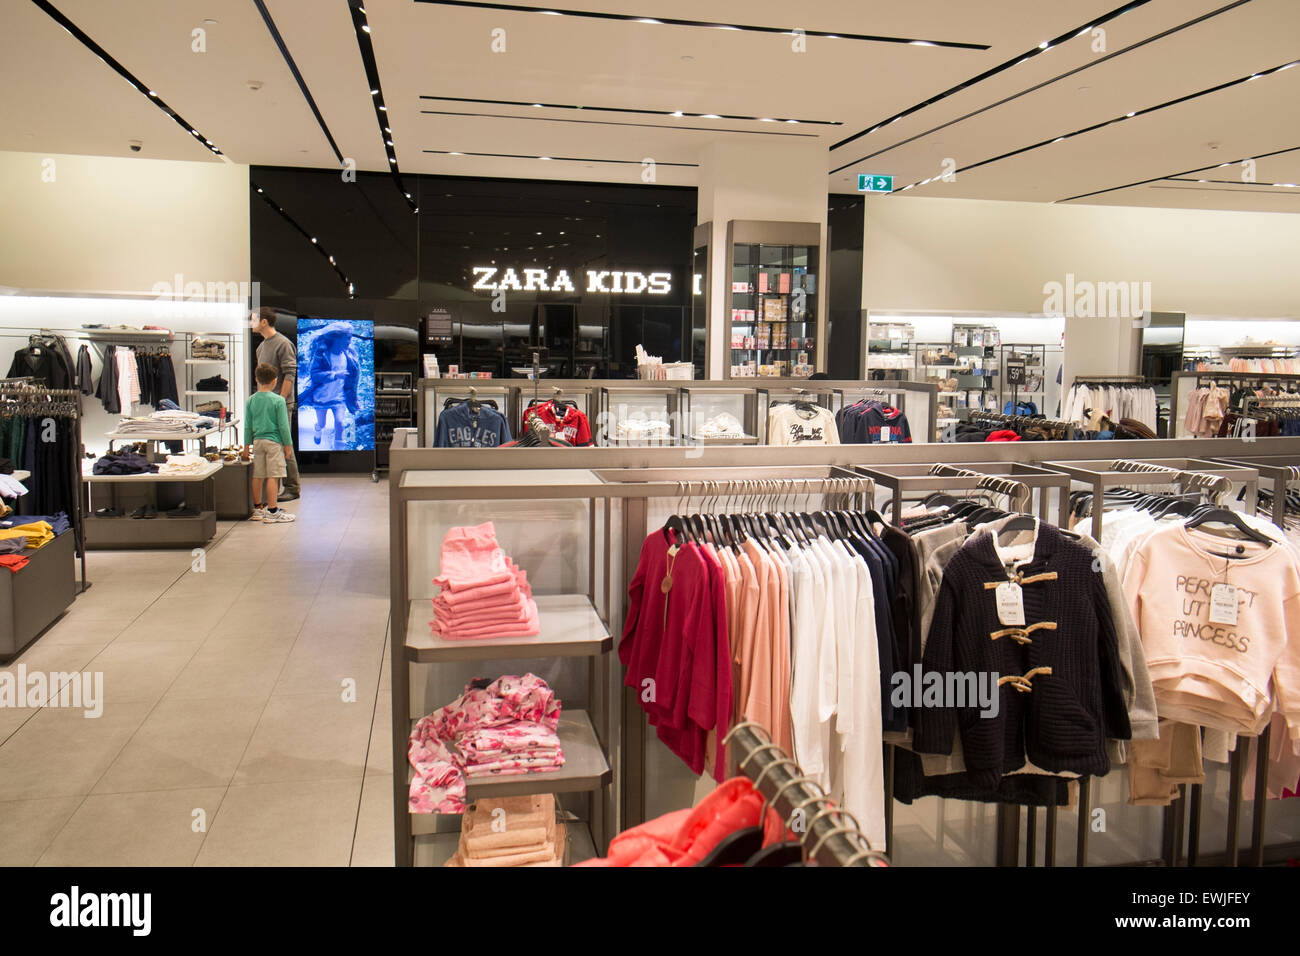 Zara Enfant Boutique | Store www.rodriguezramos.es